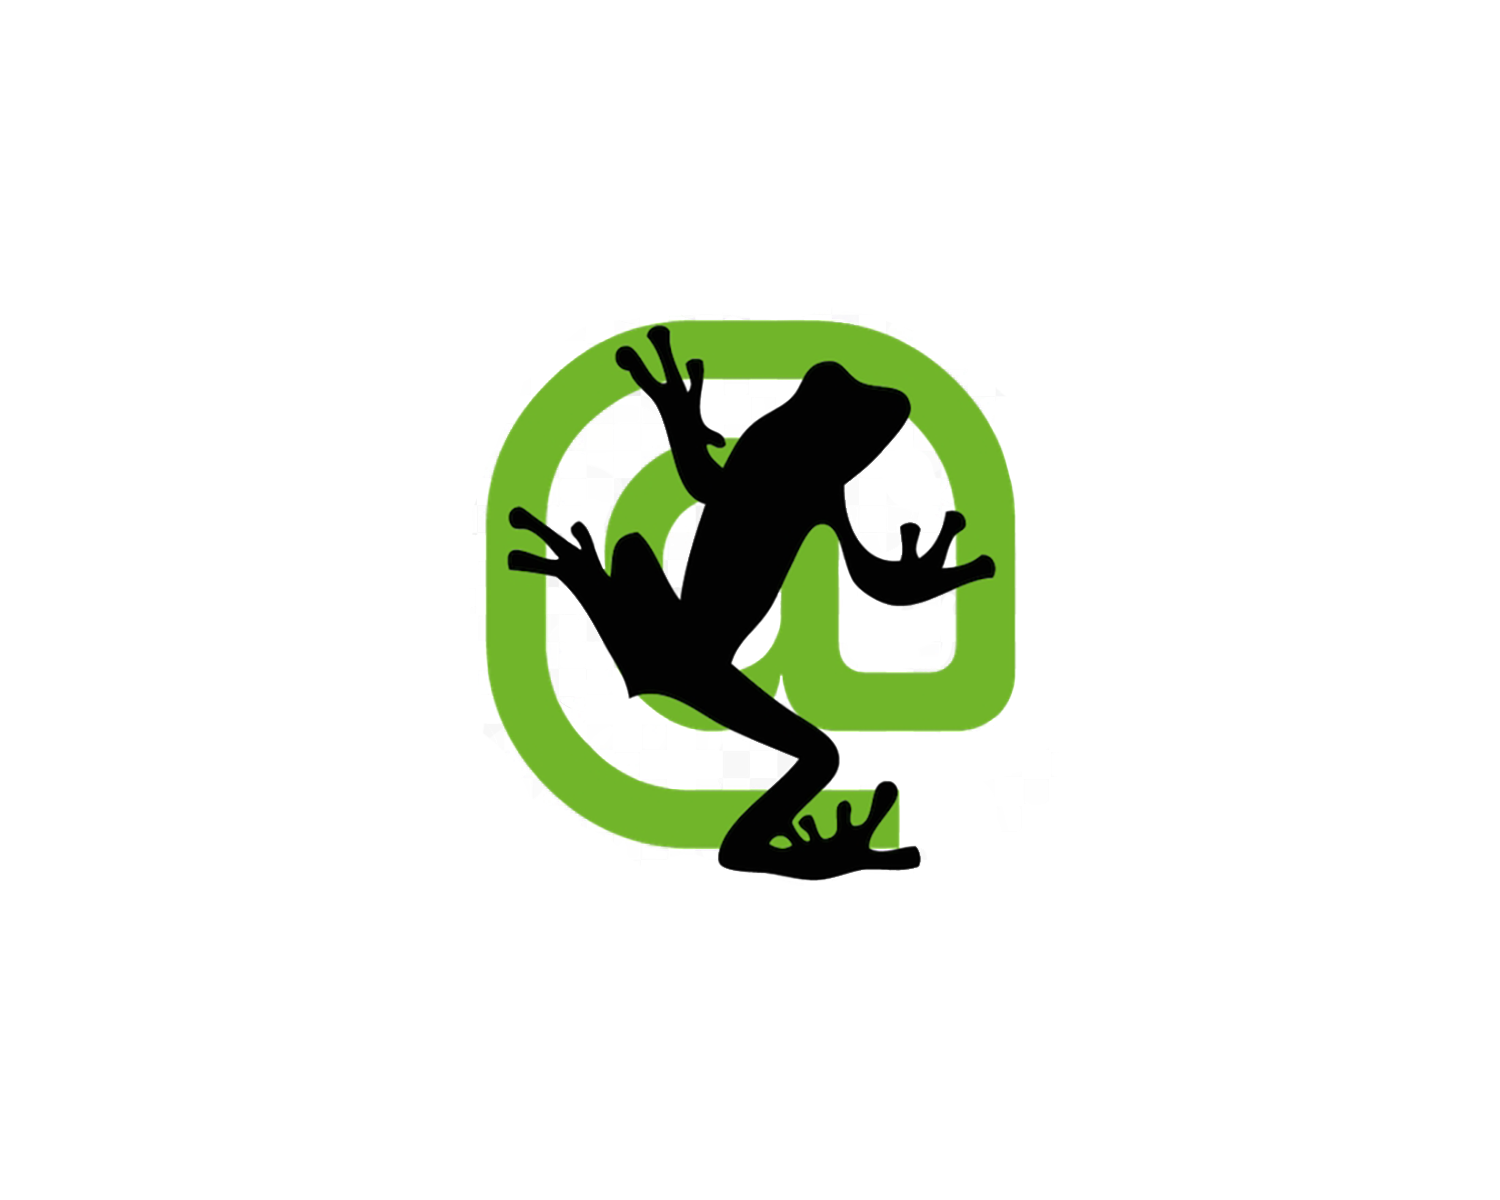 Screaming Frog logo